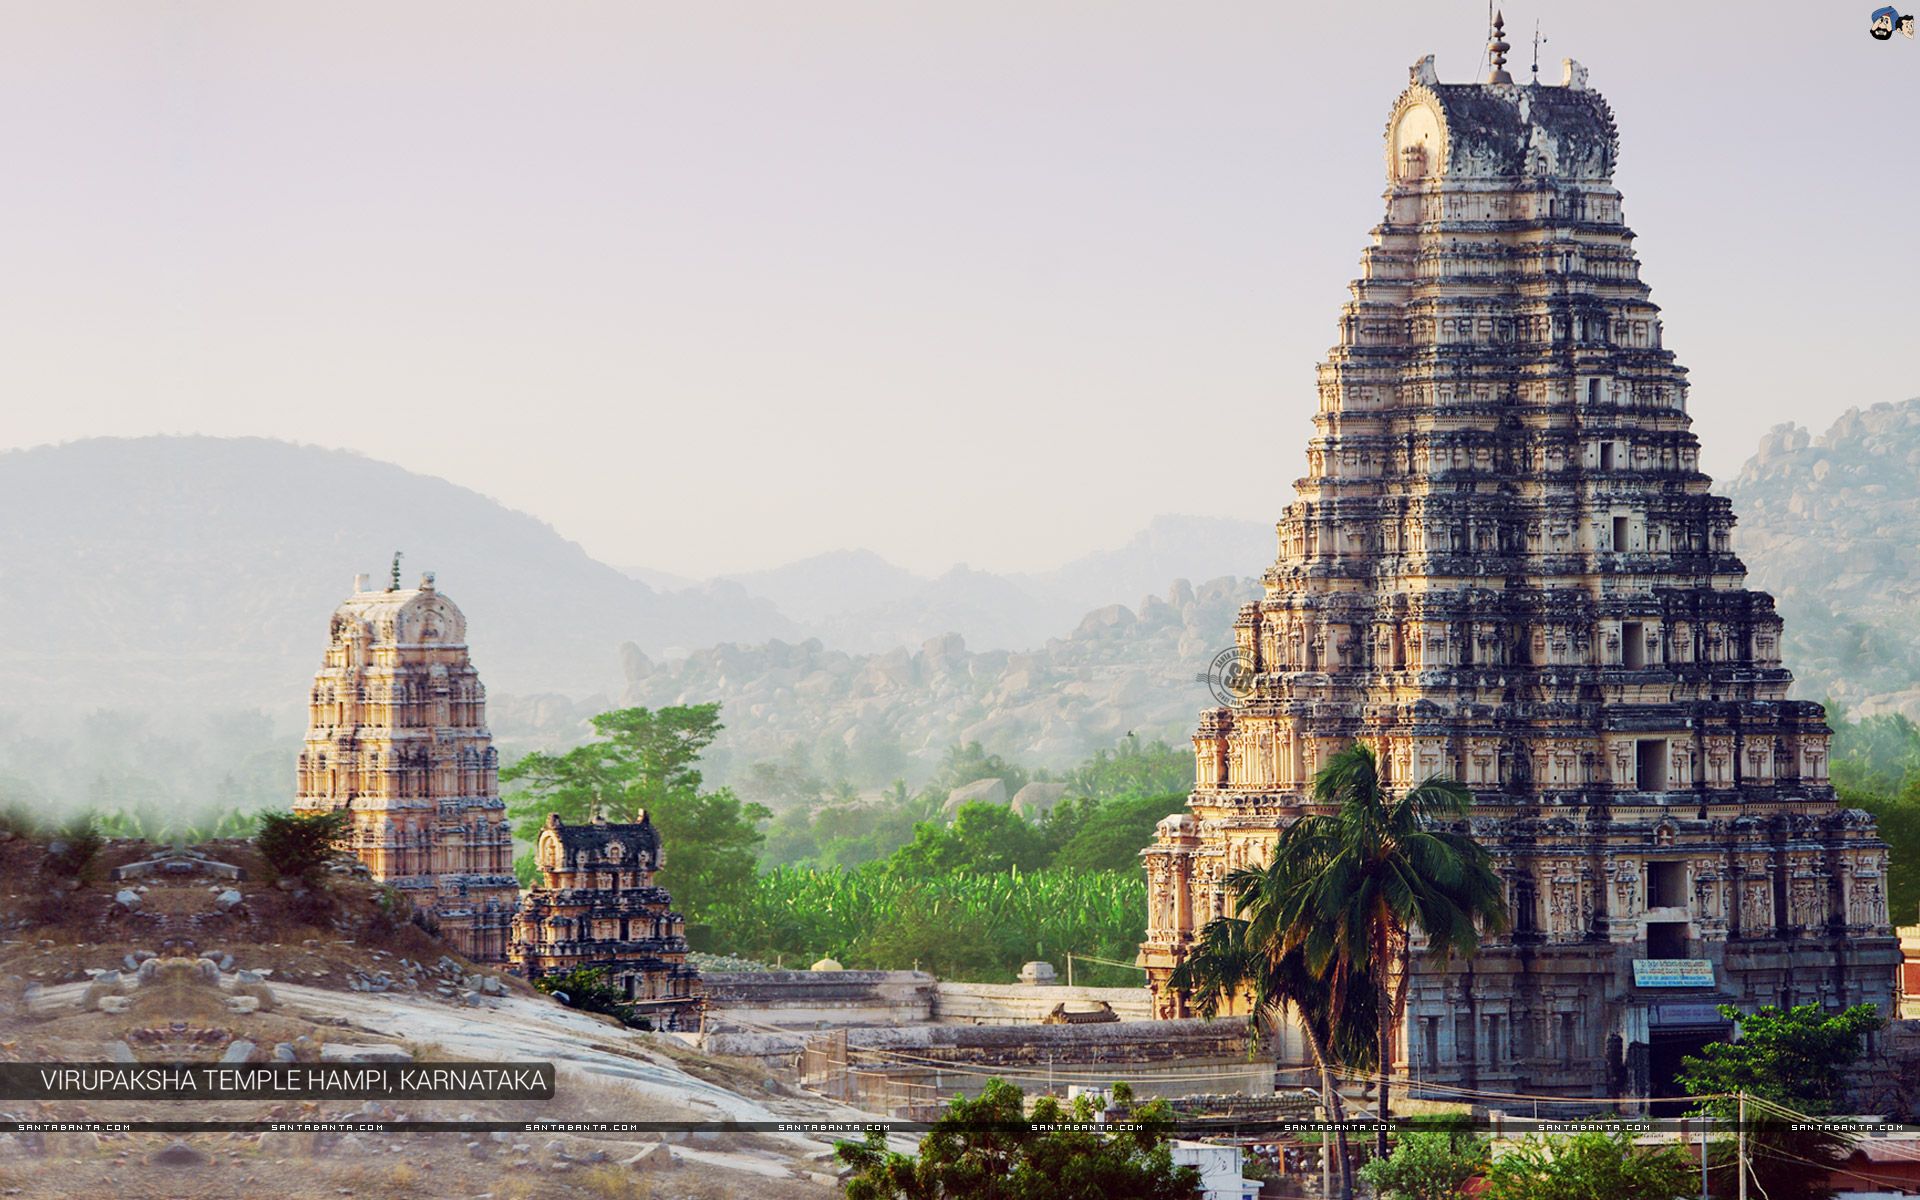 Virupaksha Temple Hampi, Karnataka